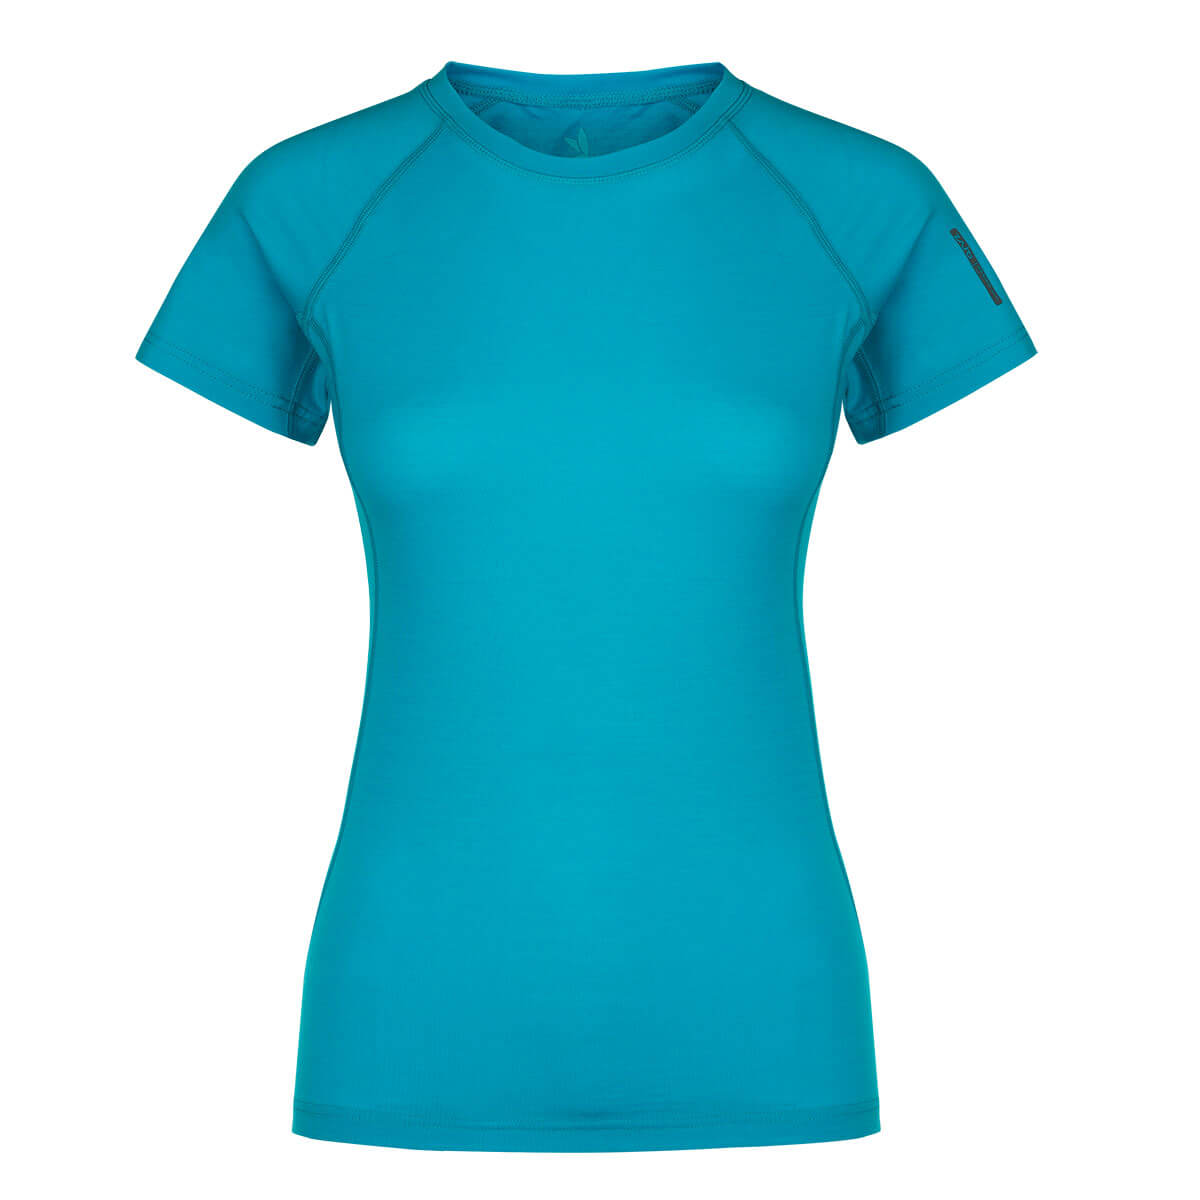 Dámske tričko Elsa Merino Nylon T-shirt SS Curacao - veľkosť M